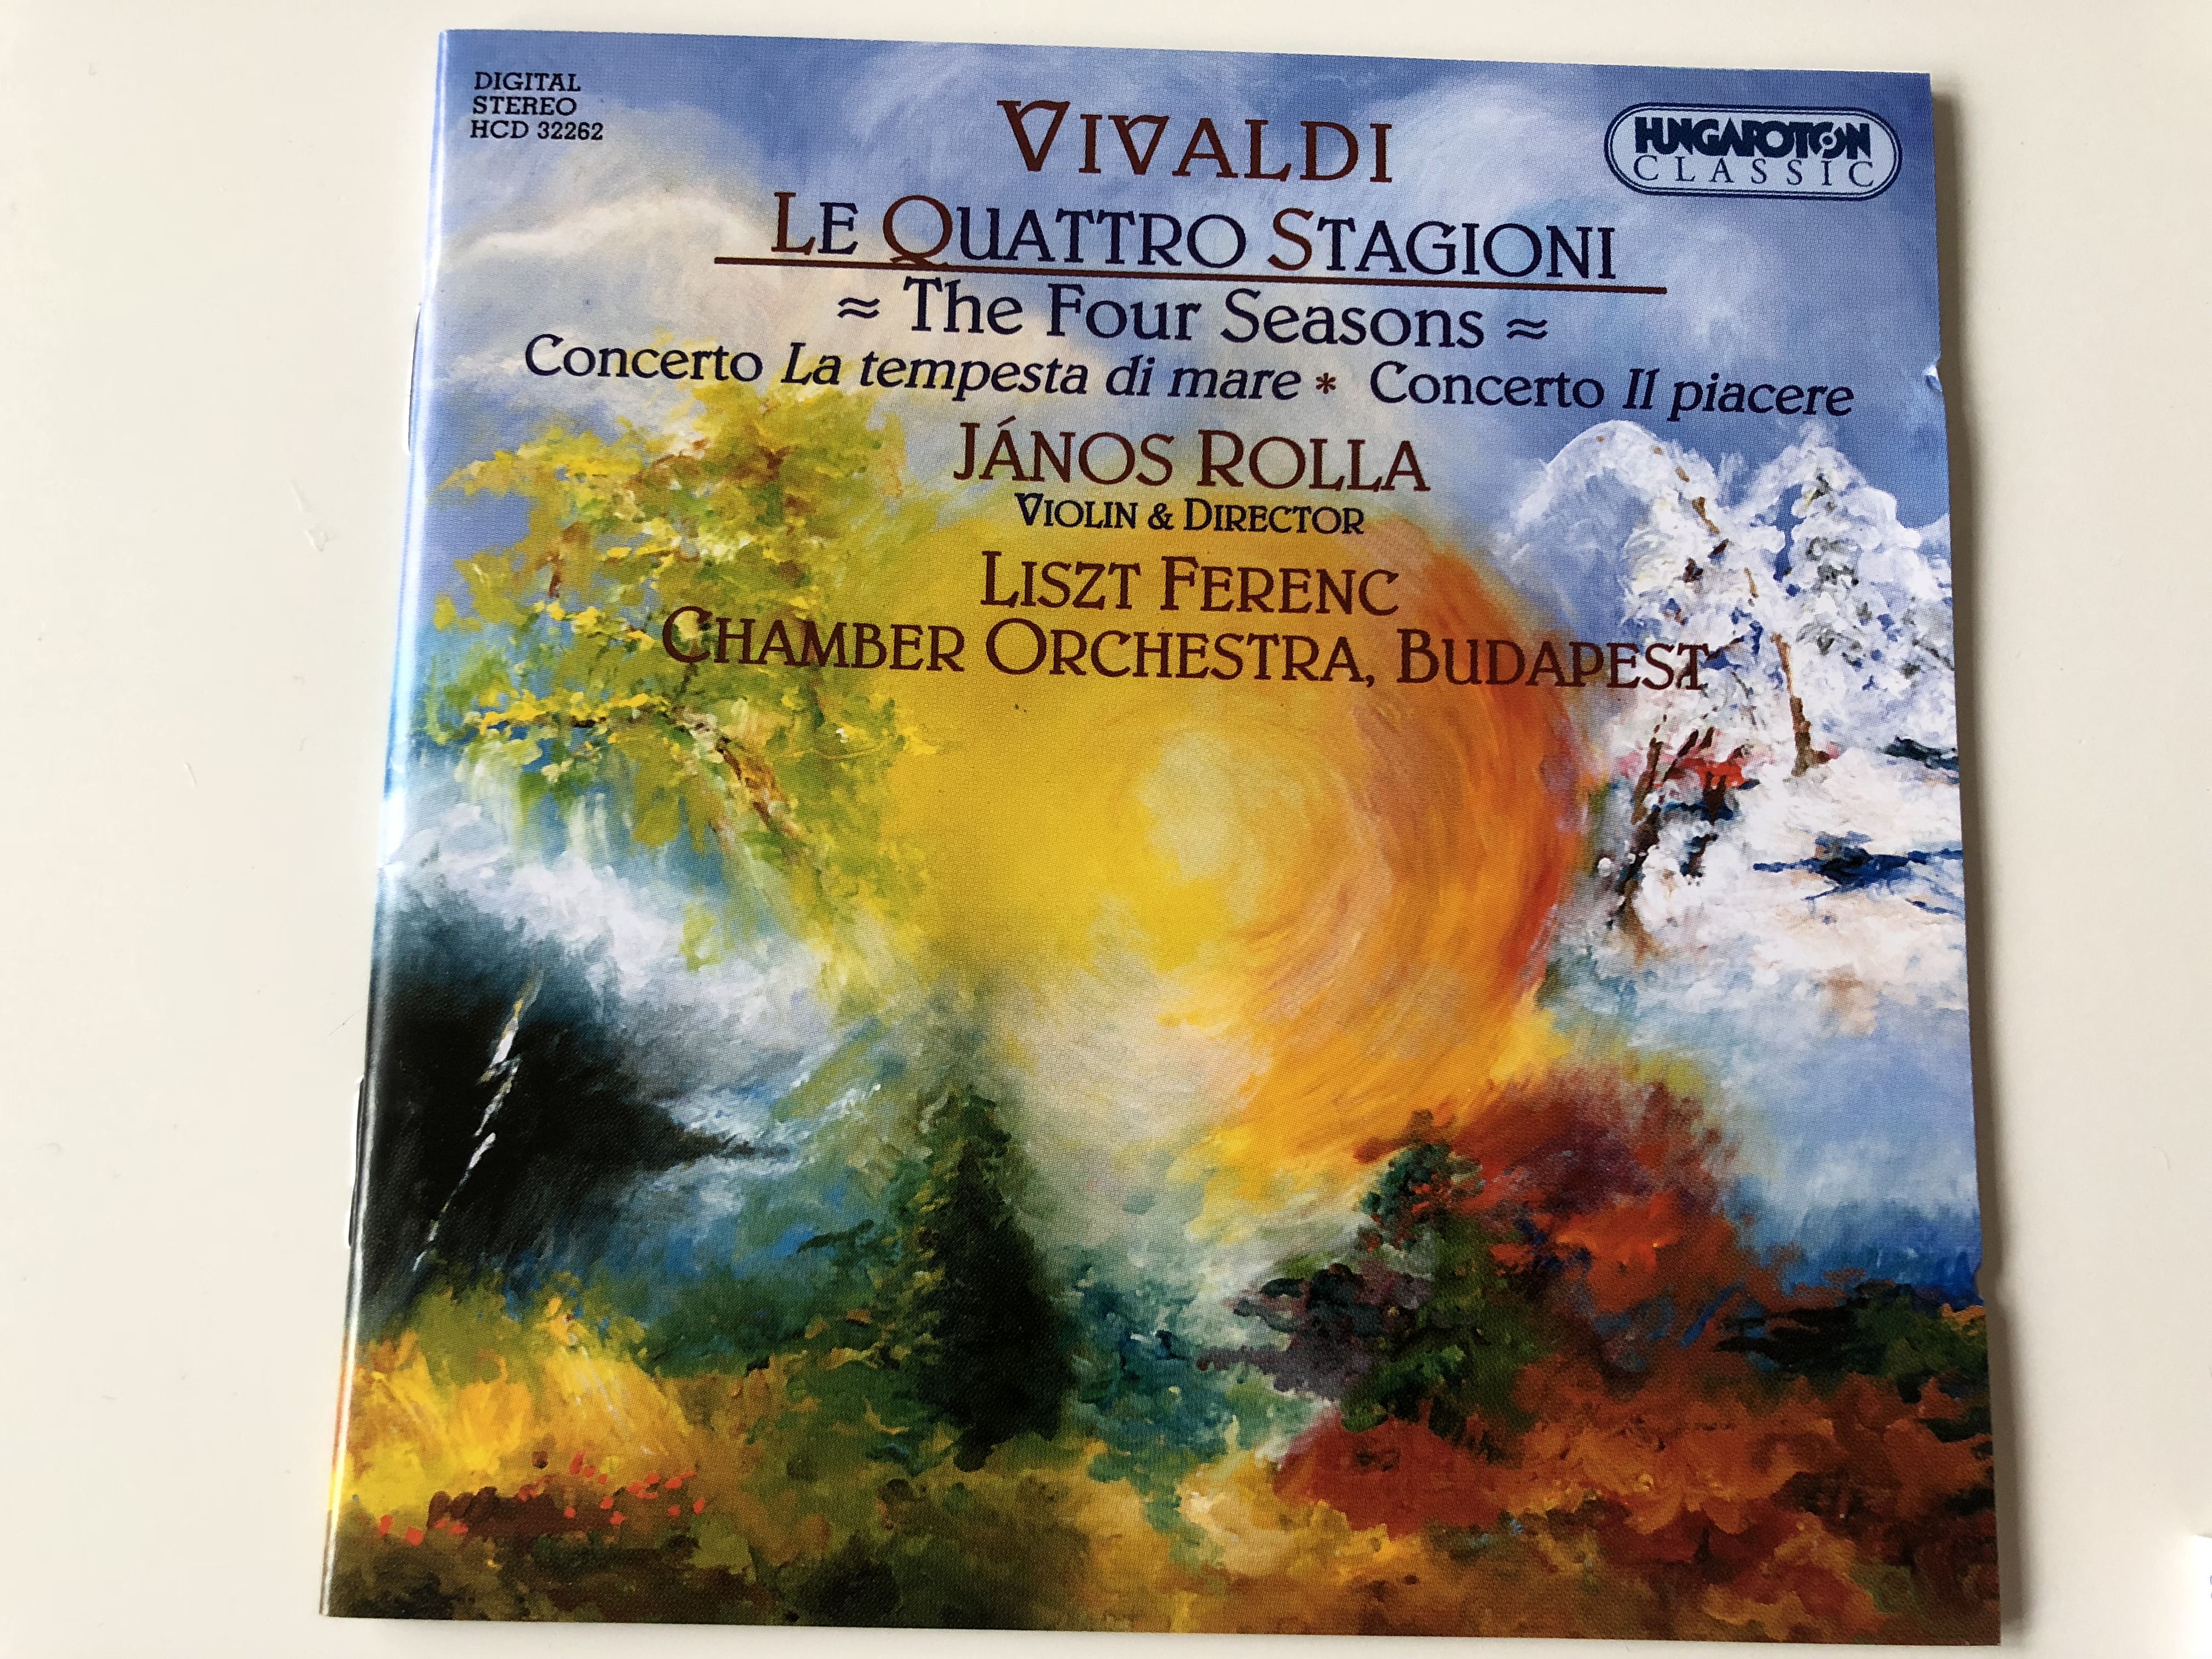 vivaldi-le-quatro-stagioni-the-four-seasons-concerto-la-tempesta-di-mare-concerto-il-piacere-j-nos-rolla-violin-director-liszt-ferenc-chamber-orchestra-budapest-hungaroton-classic-audio-cd-2003-hcd-32262-1-.jpg